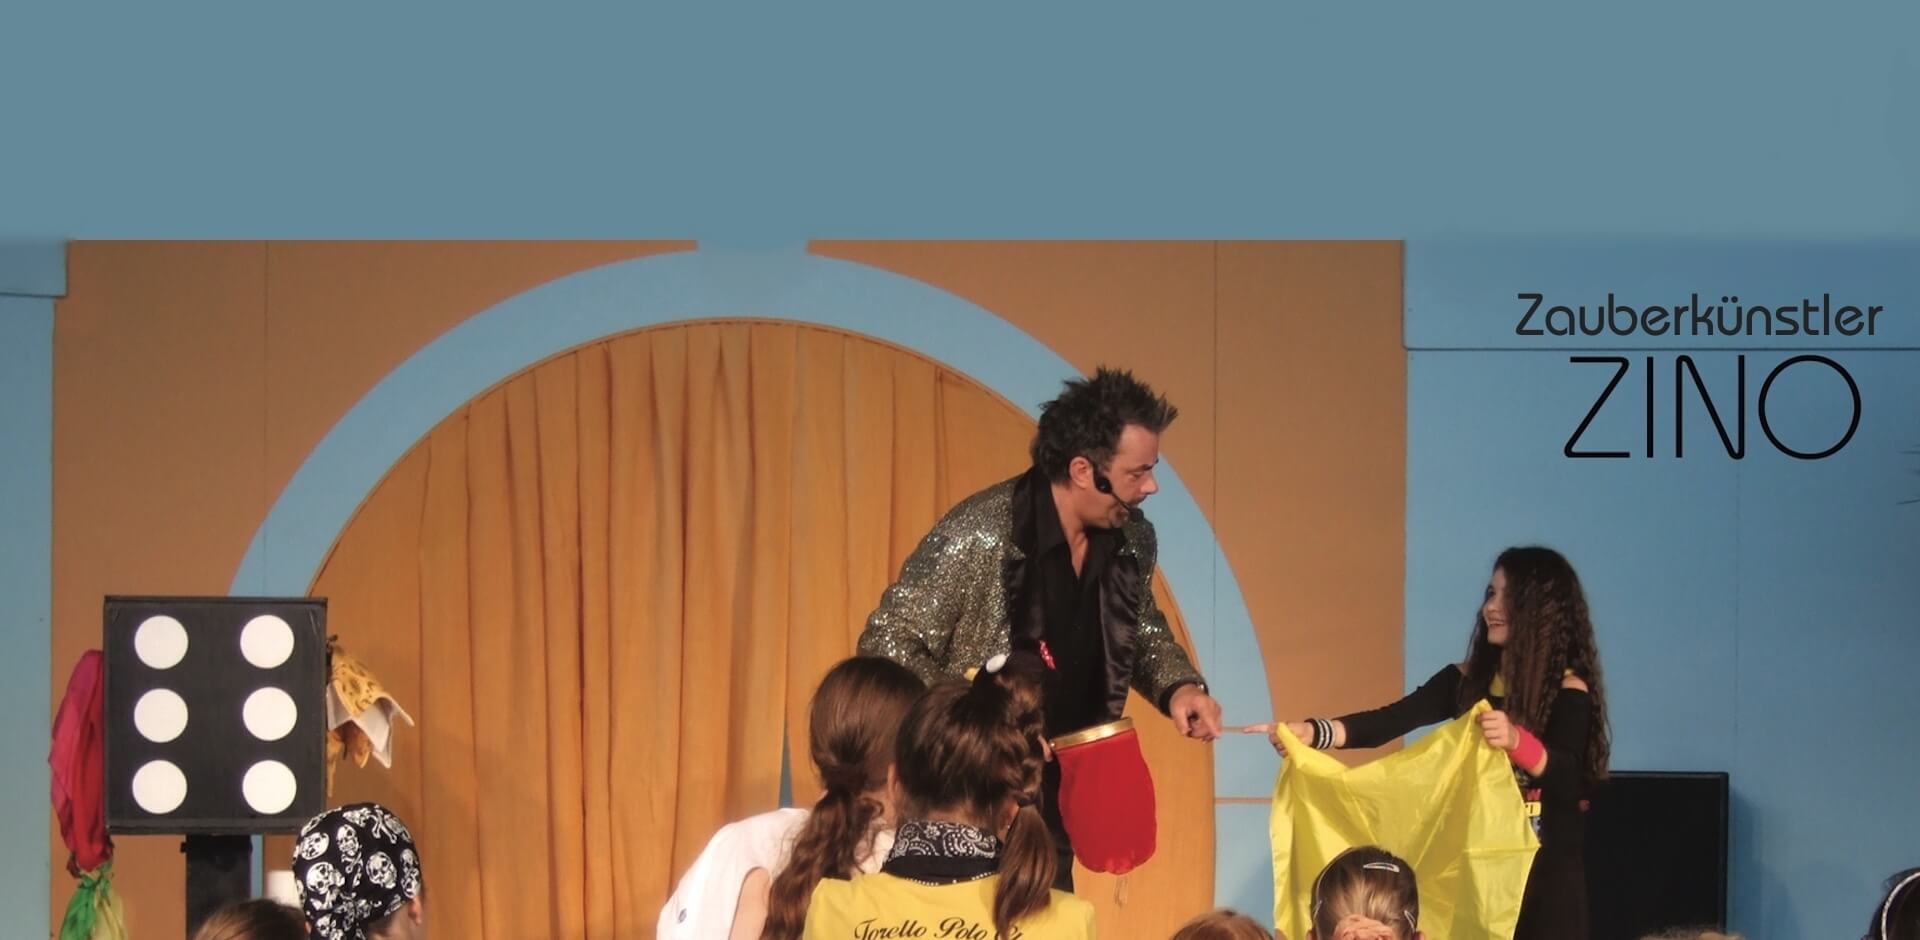 Zauberkünstler ZINO mit einem Mädchen als Assistentin bei einer Kinderzaubershow